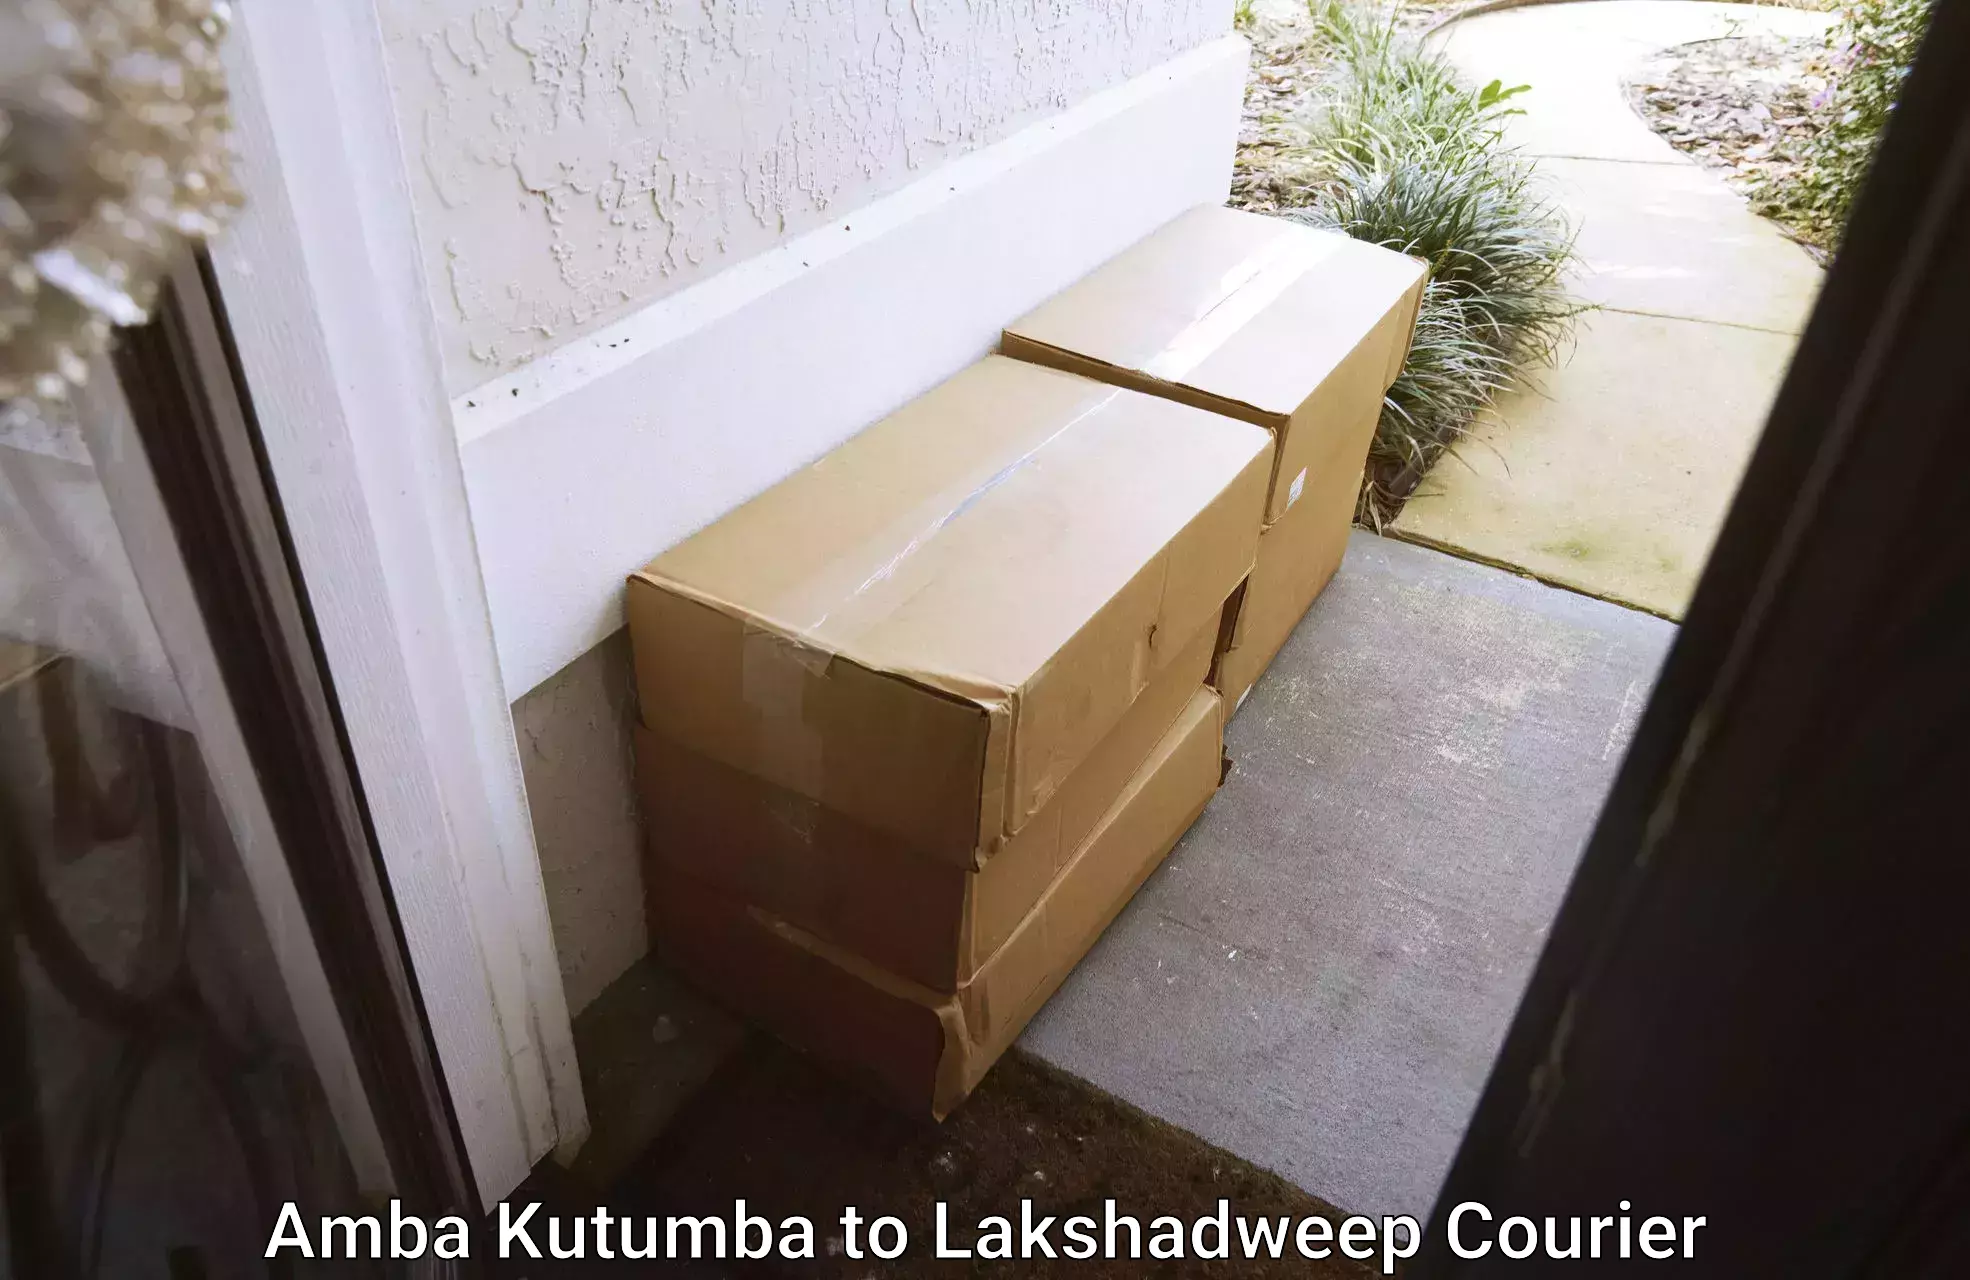 Reliable movers Amba Kutumba to Lakshadweep